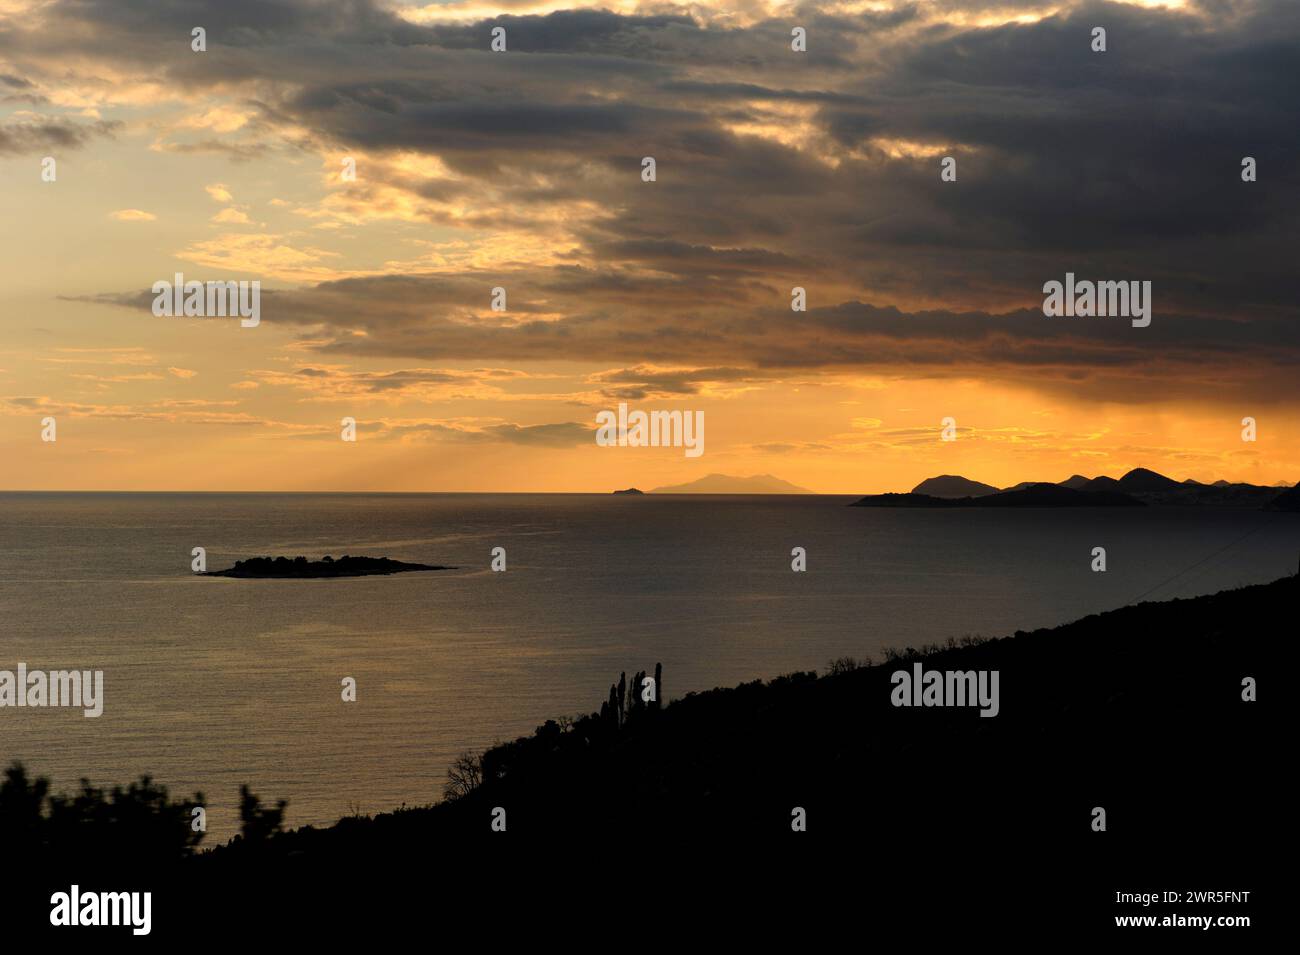 Paysage de coucher de soleil sur la côte de Dalmatie Croatie mer Adriatique Méditerranée Banque D'Images